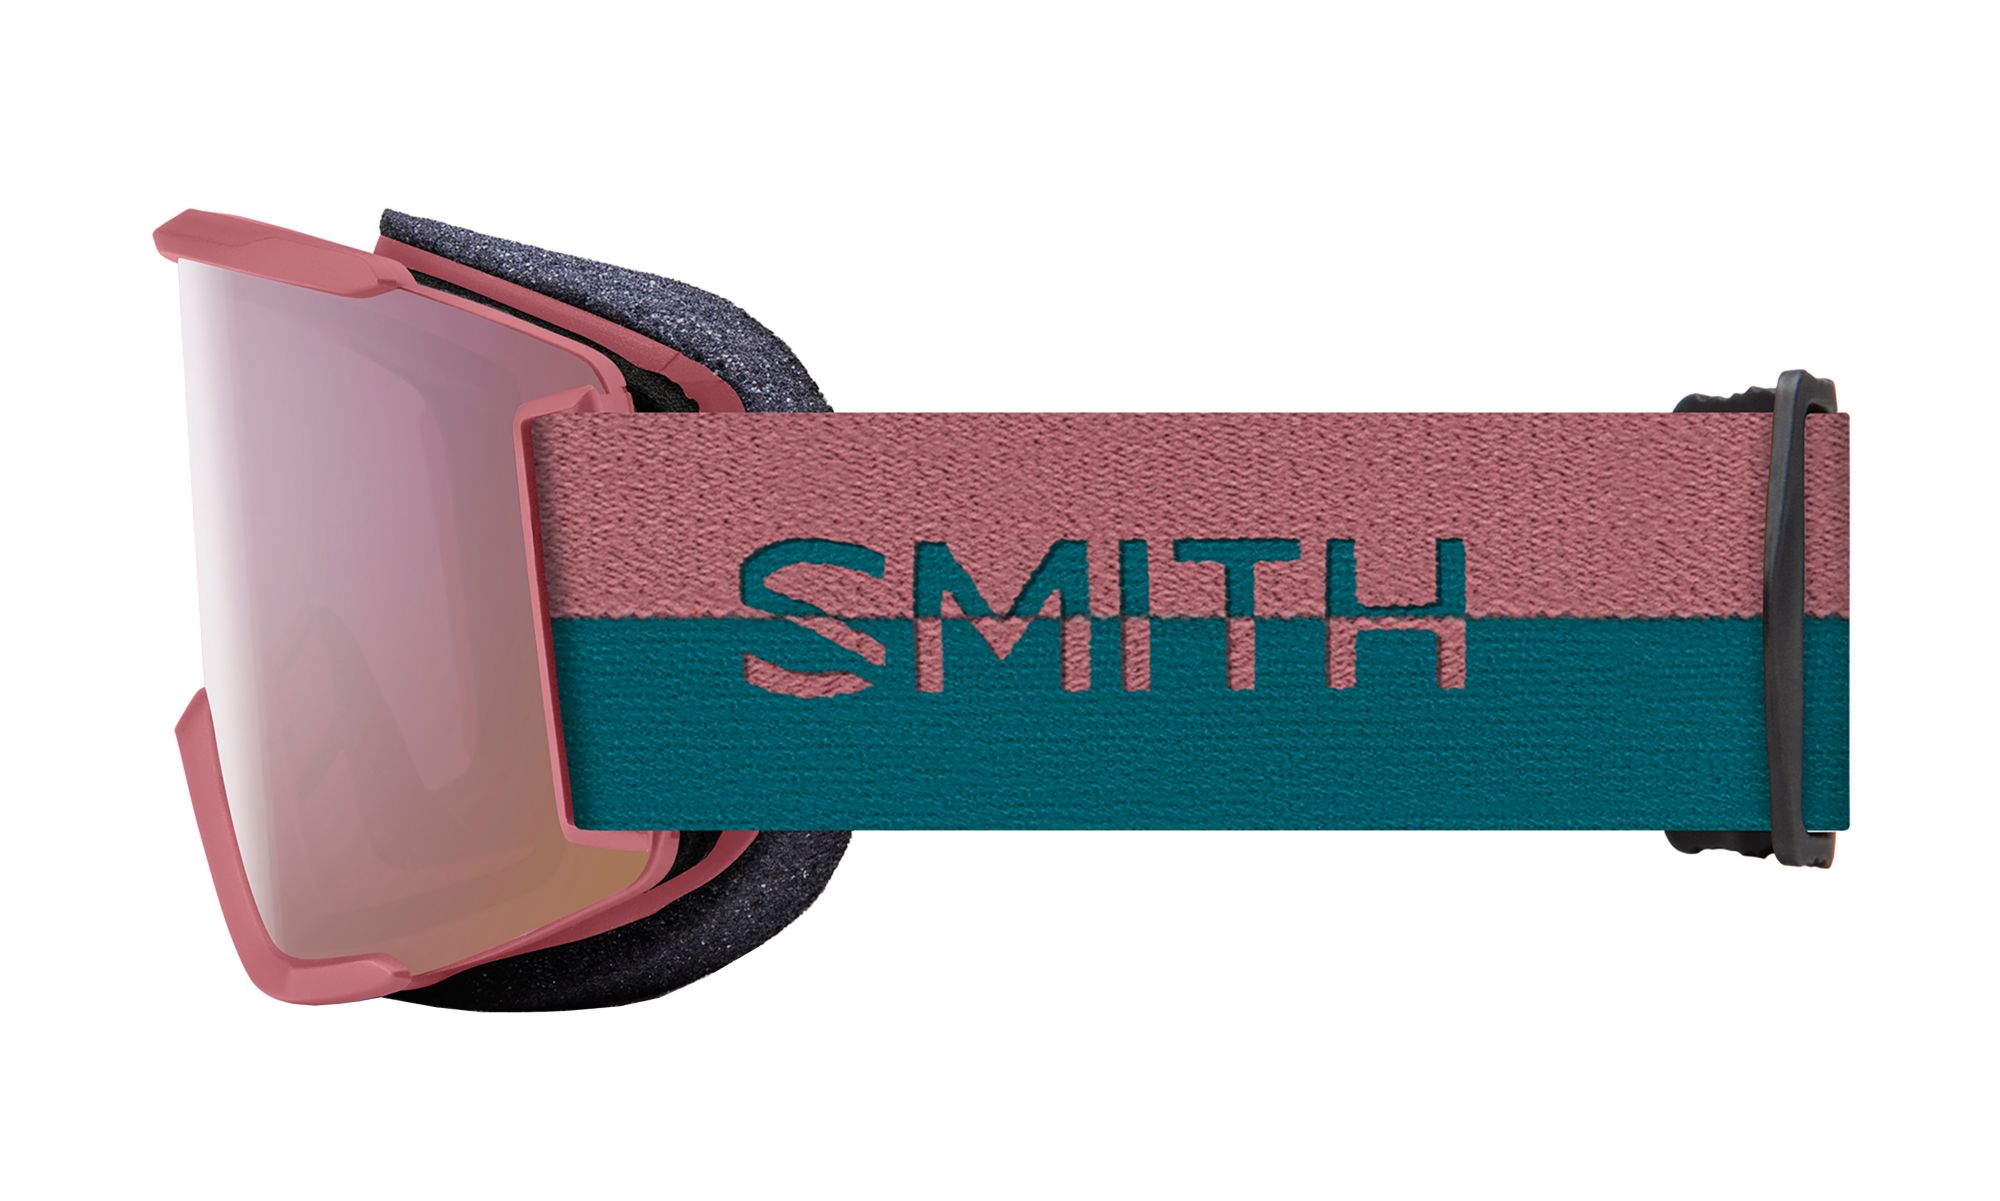 SMITH  Unisex Squad S Snow Goggles